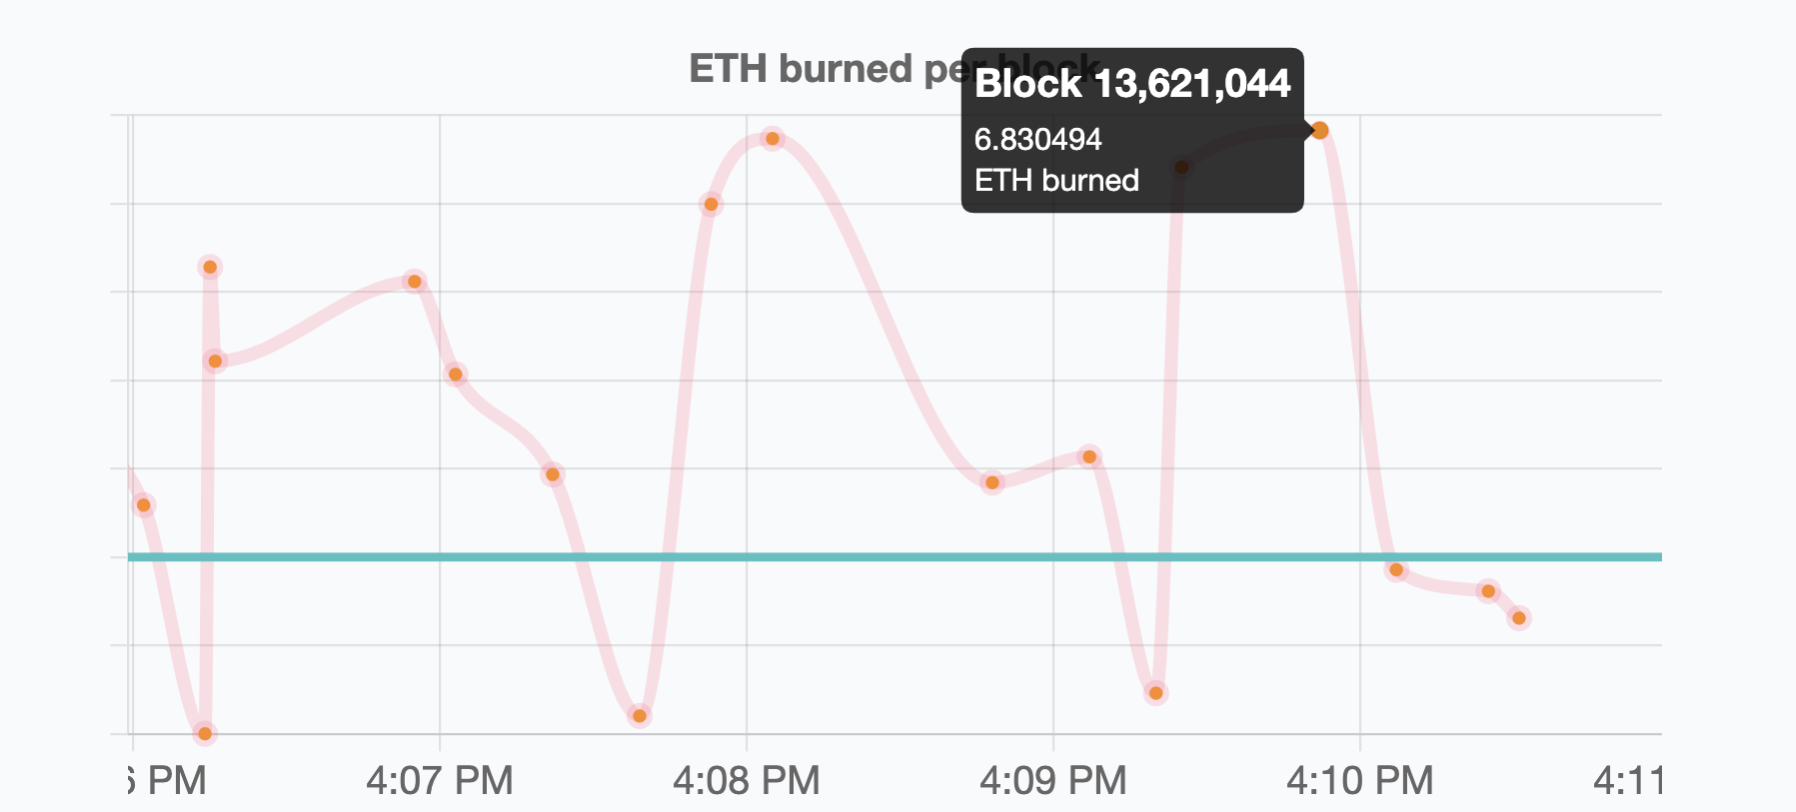 Ethereum burned by block, Nov 2021